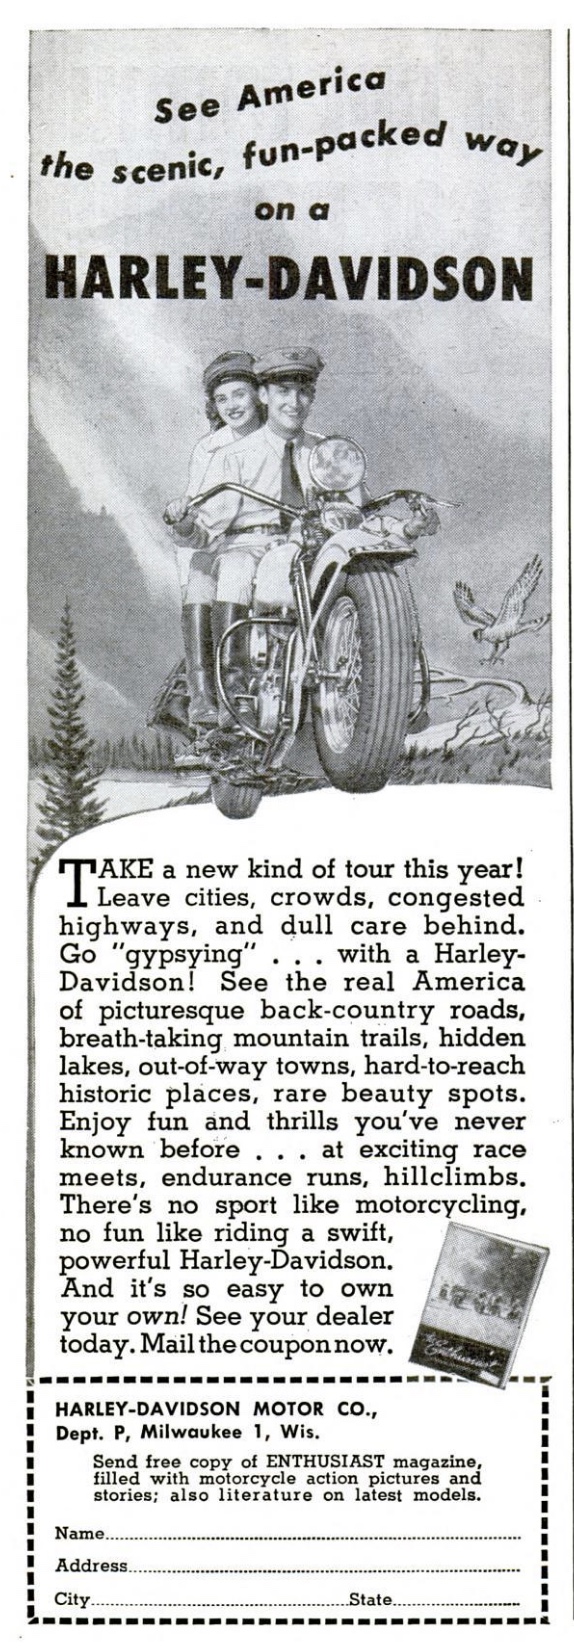 1948 - Anuncio Harley-Davidson